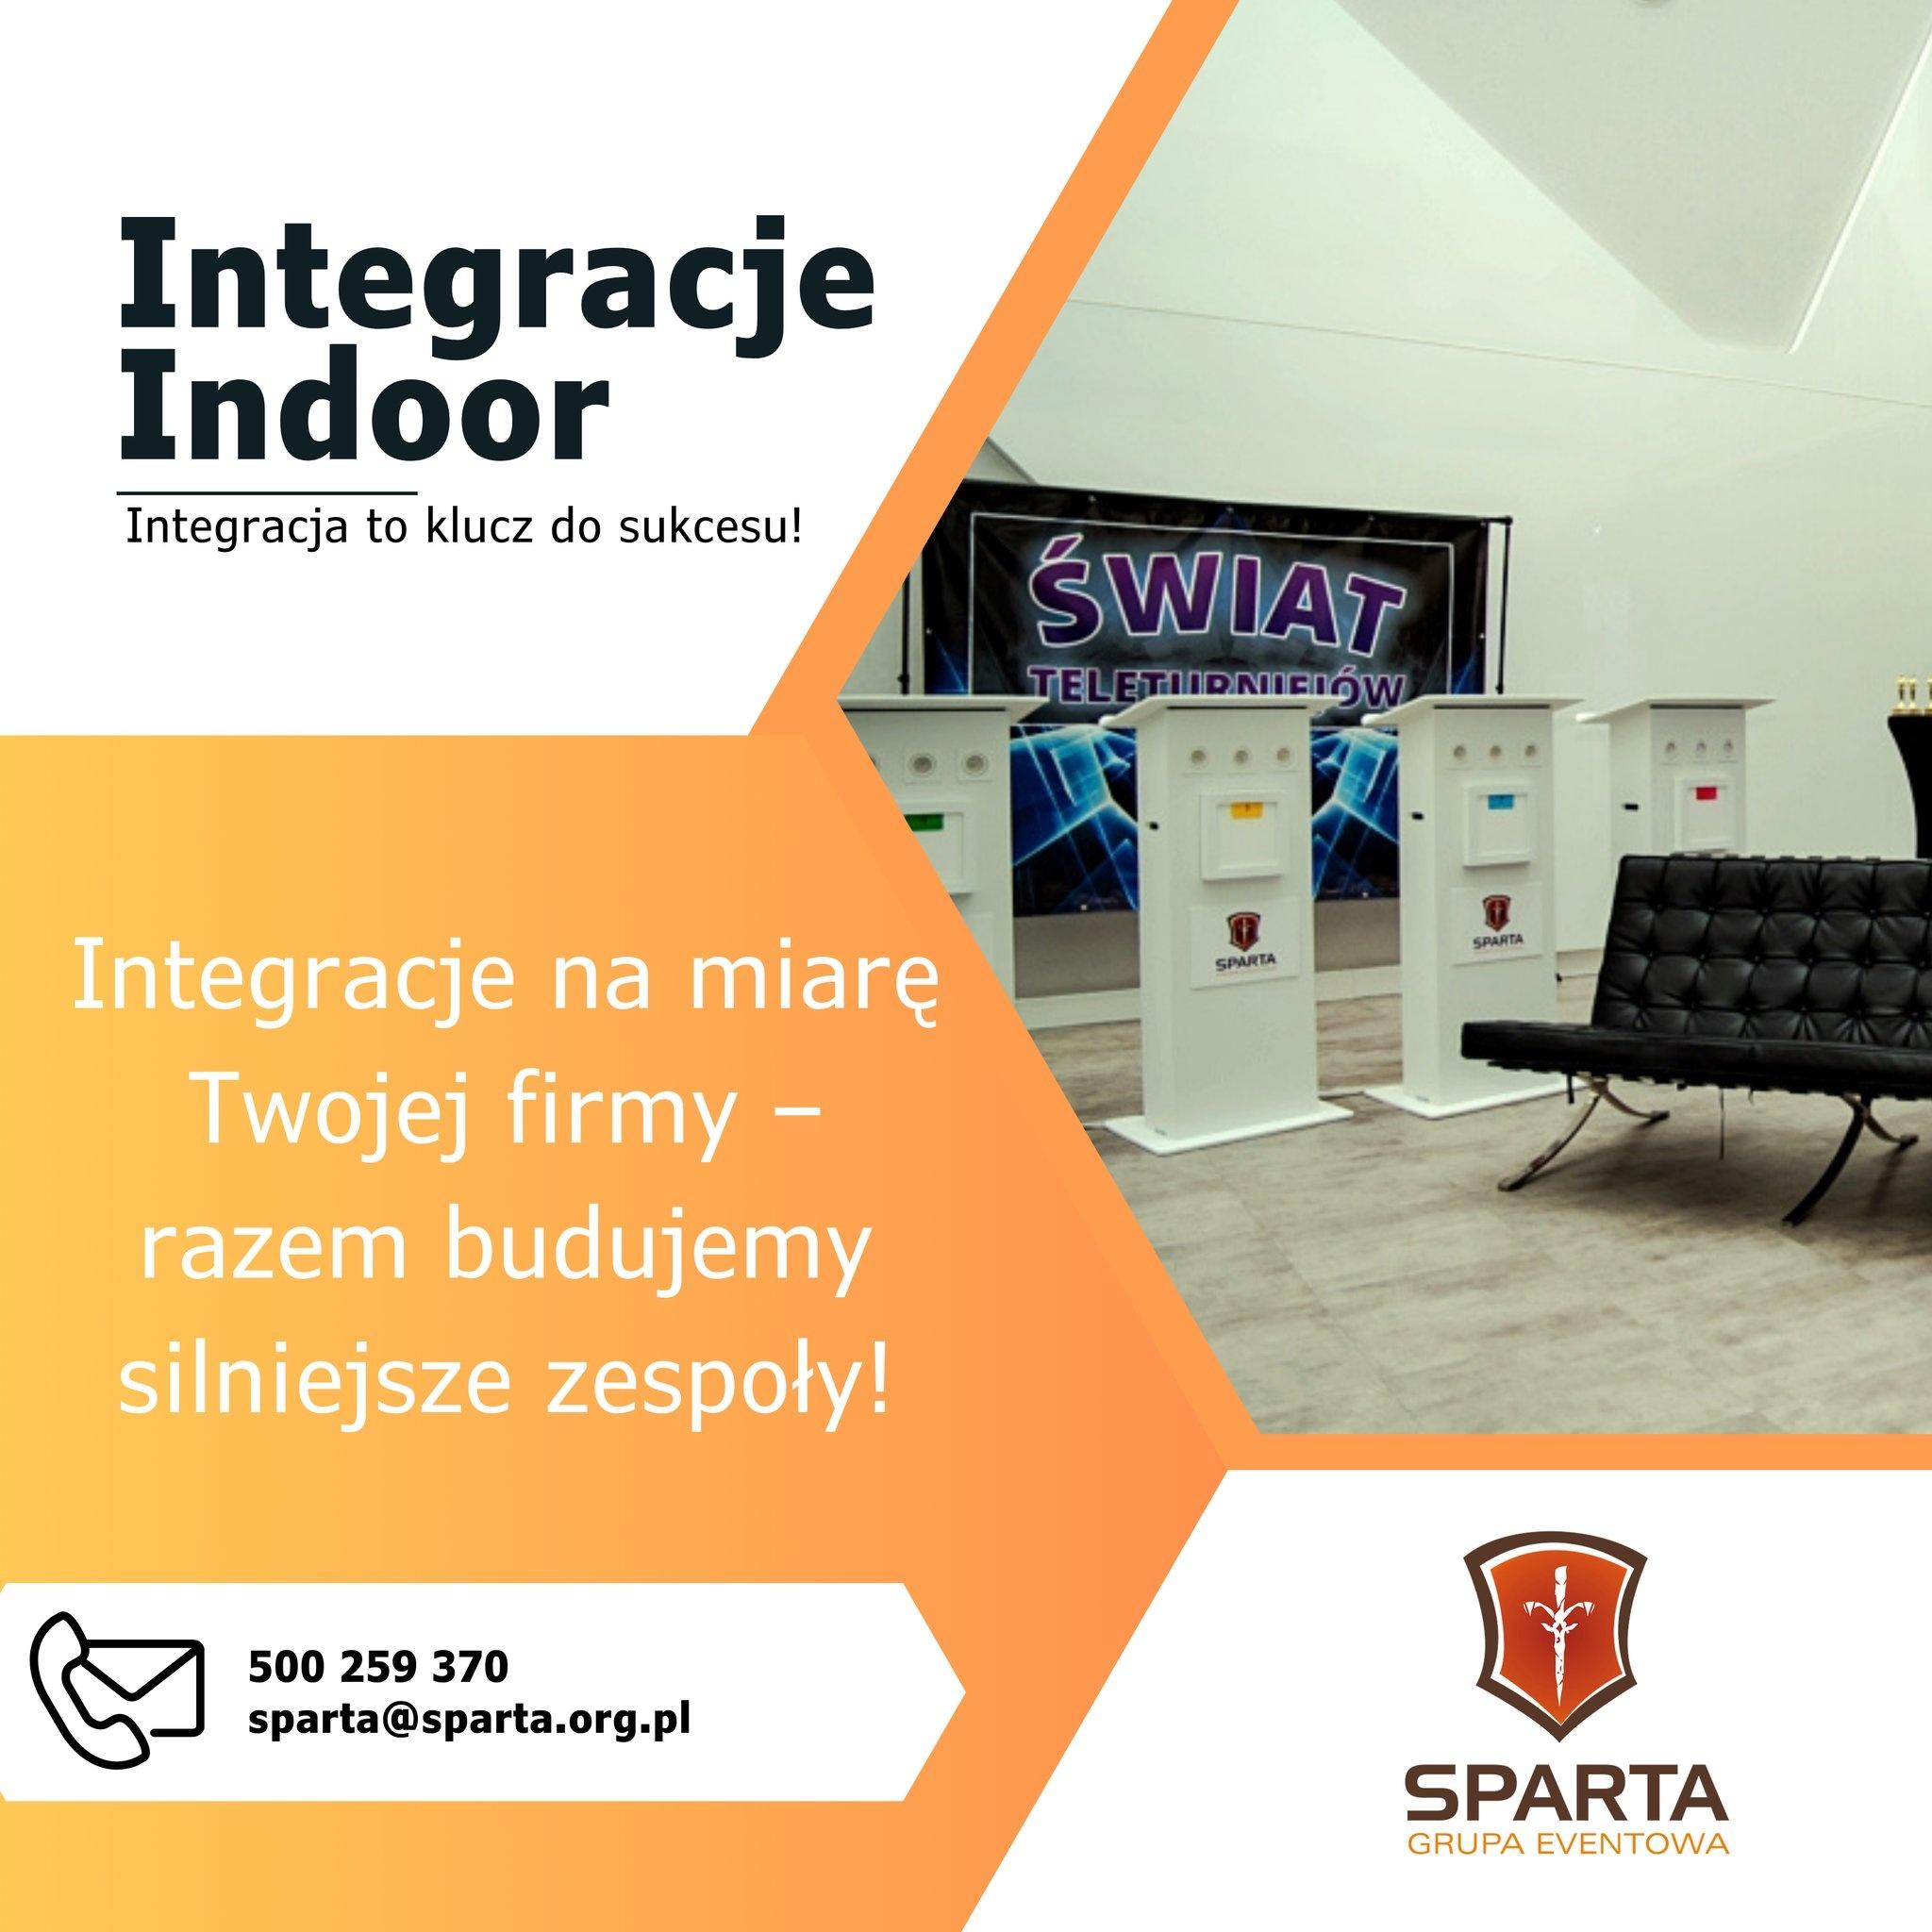 Integracja Indoor